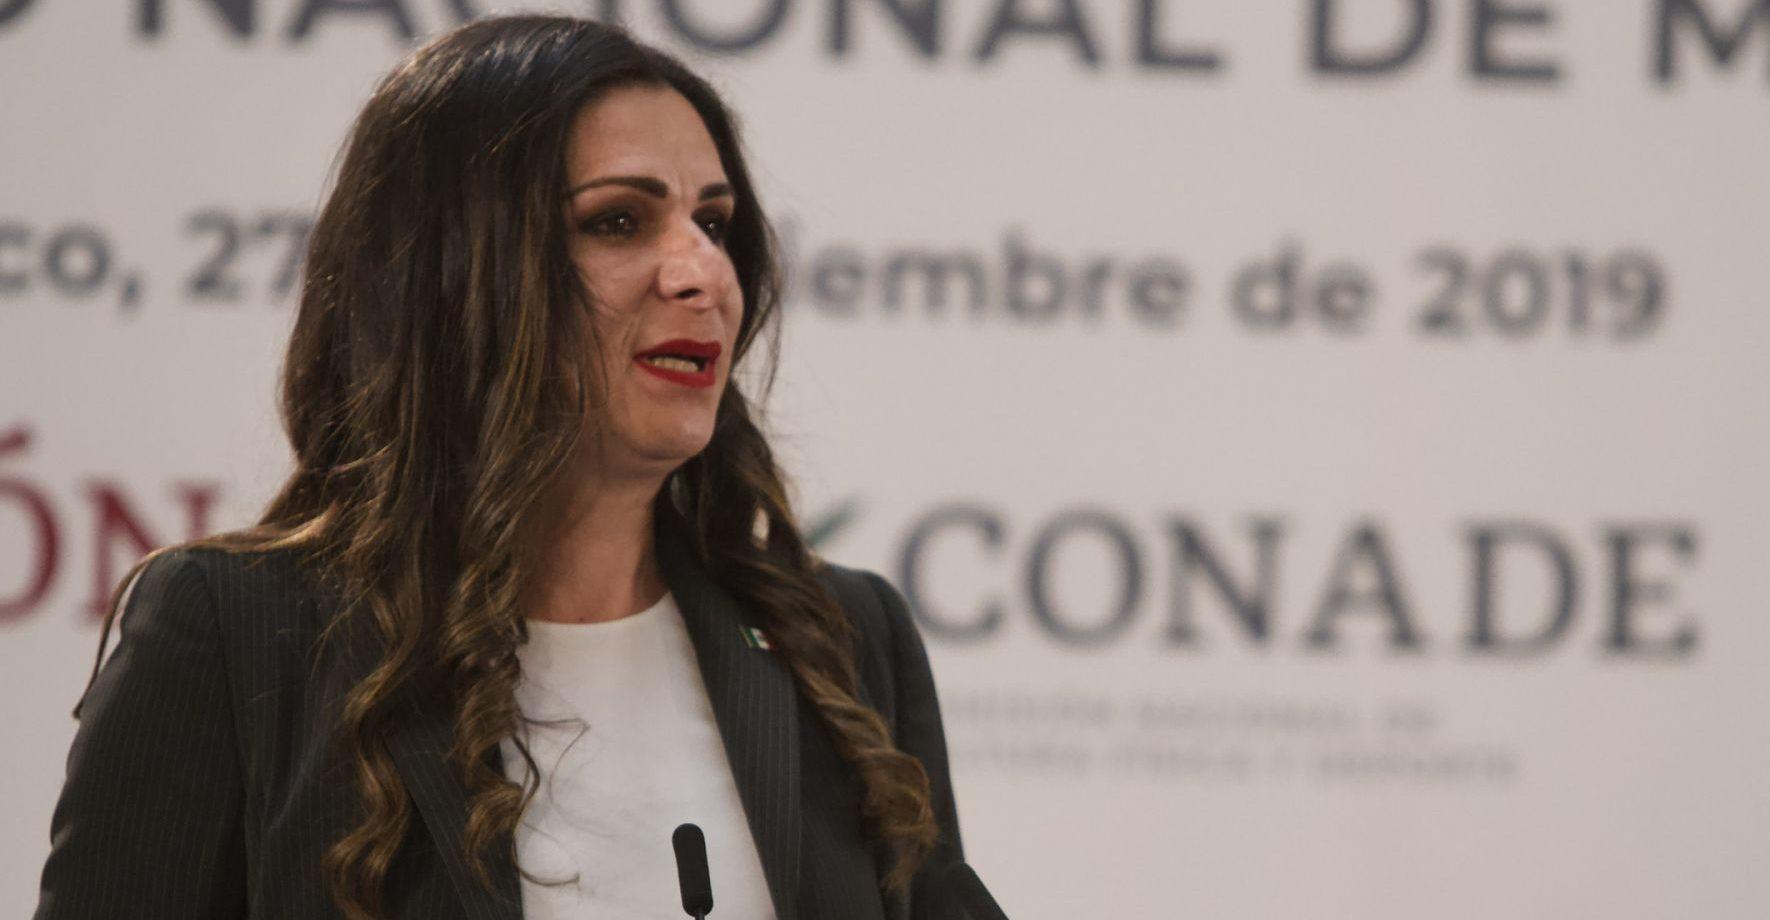 Facturas falsas y sobreprecios, algunas de las faltas detectadas por la SFP en la Conade de Ana Guevara